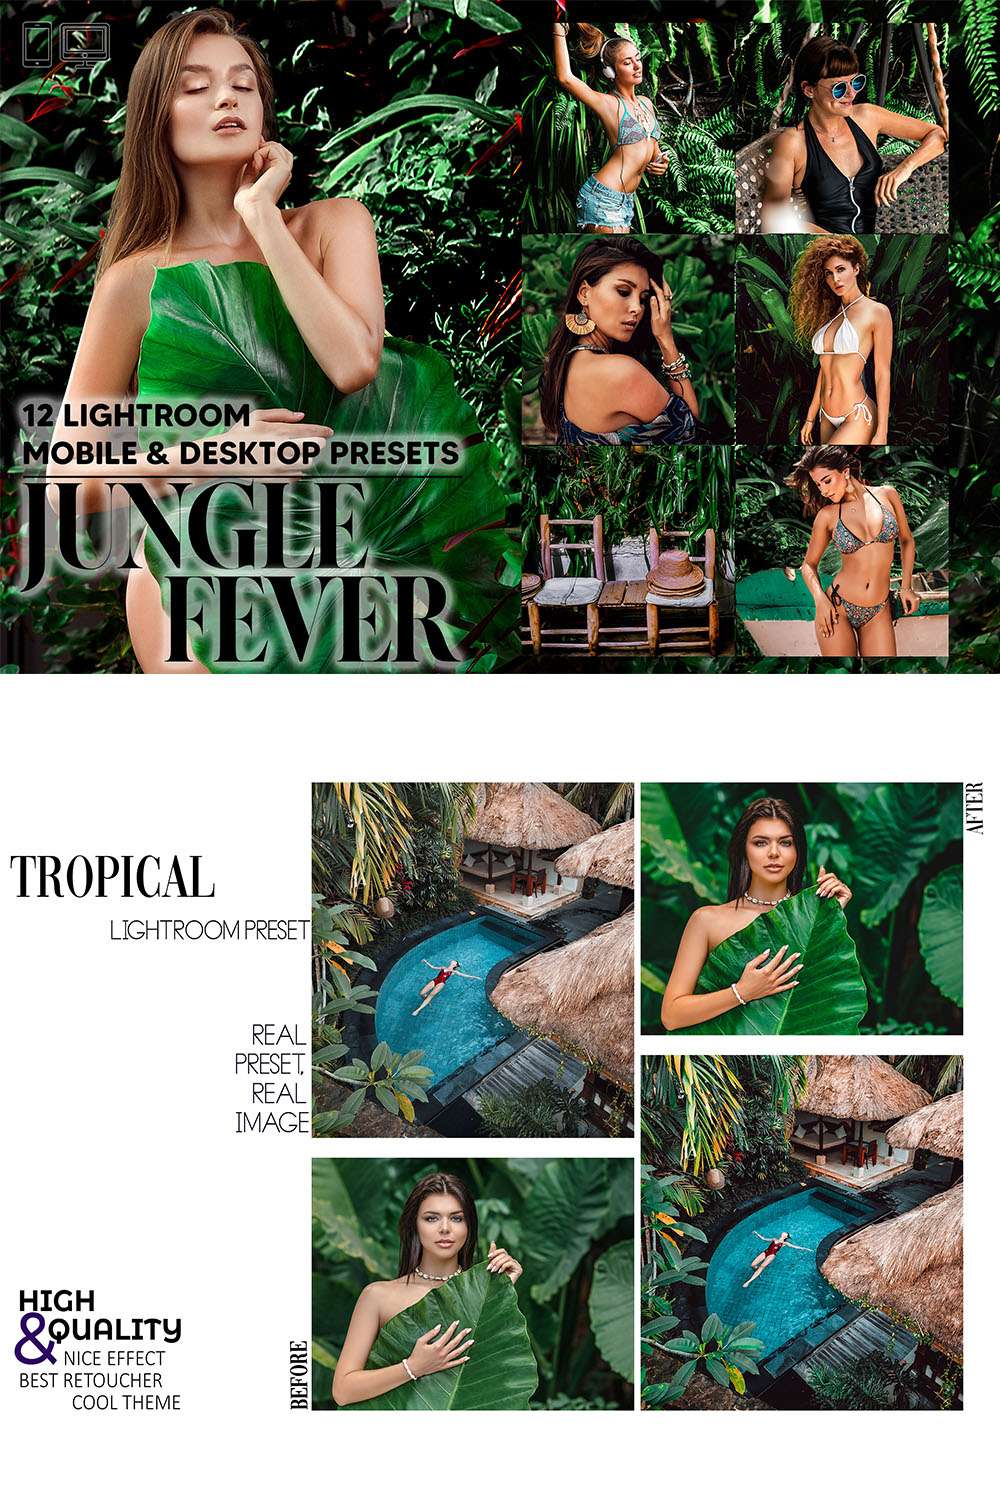 12 Jungle Fever Lightroom Presets, Tropical Mobile Preset, Moody Forest Desktop Lifestyle Portrait Theme For Instagram LR Filter DNG Natural pinterest preview image.